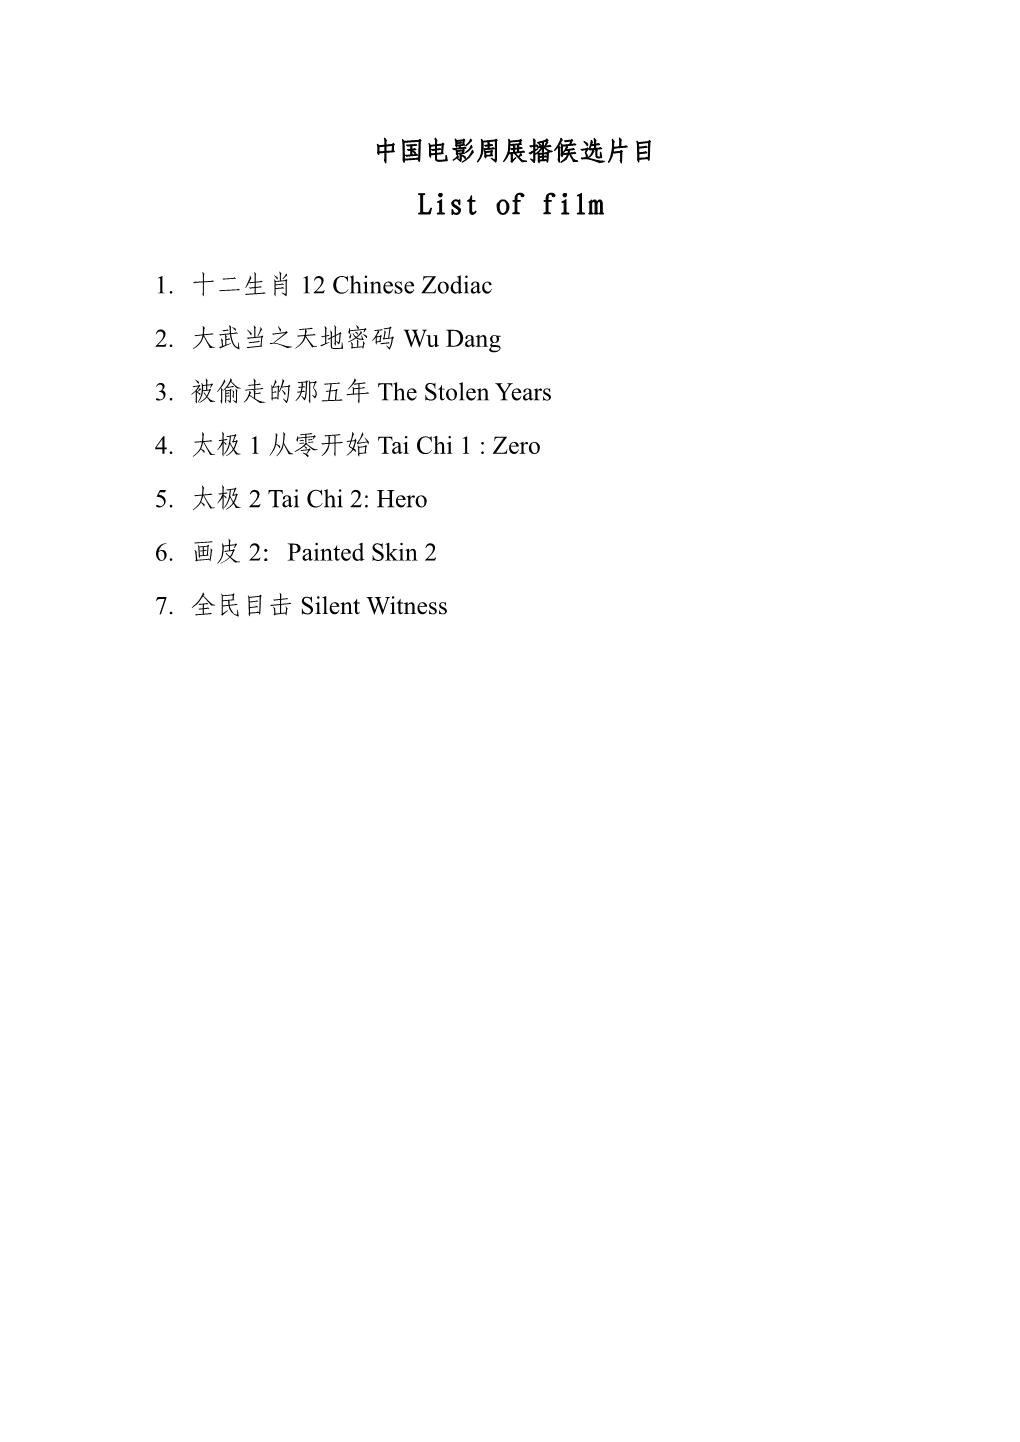 中国电影周展播候选片目- List of Film